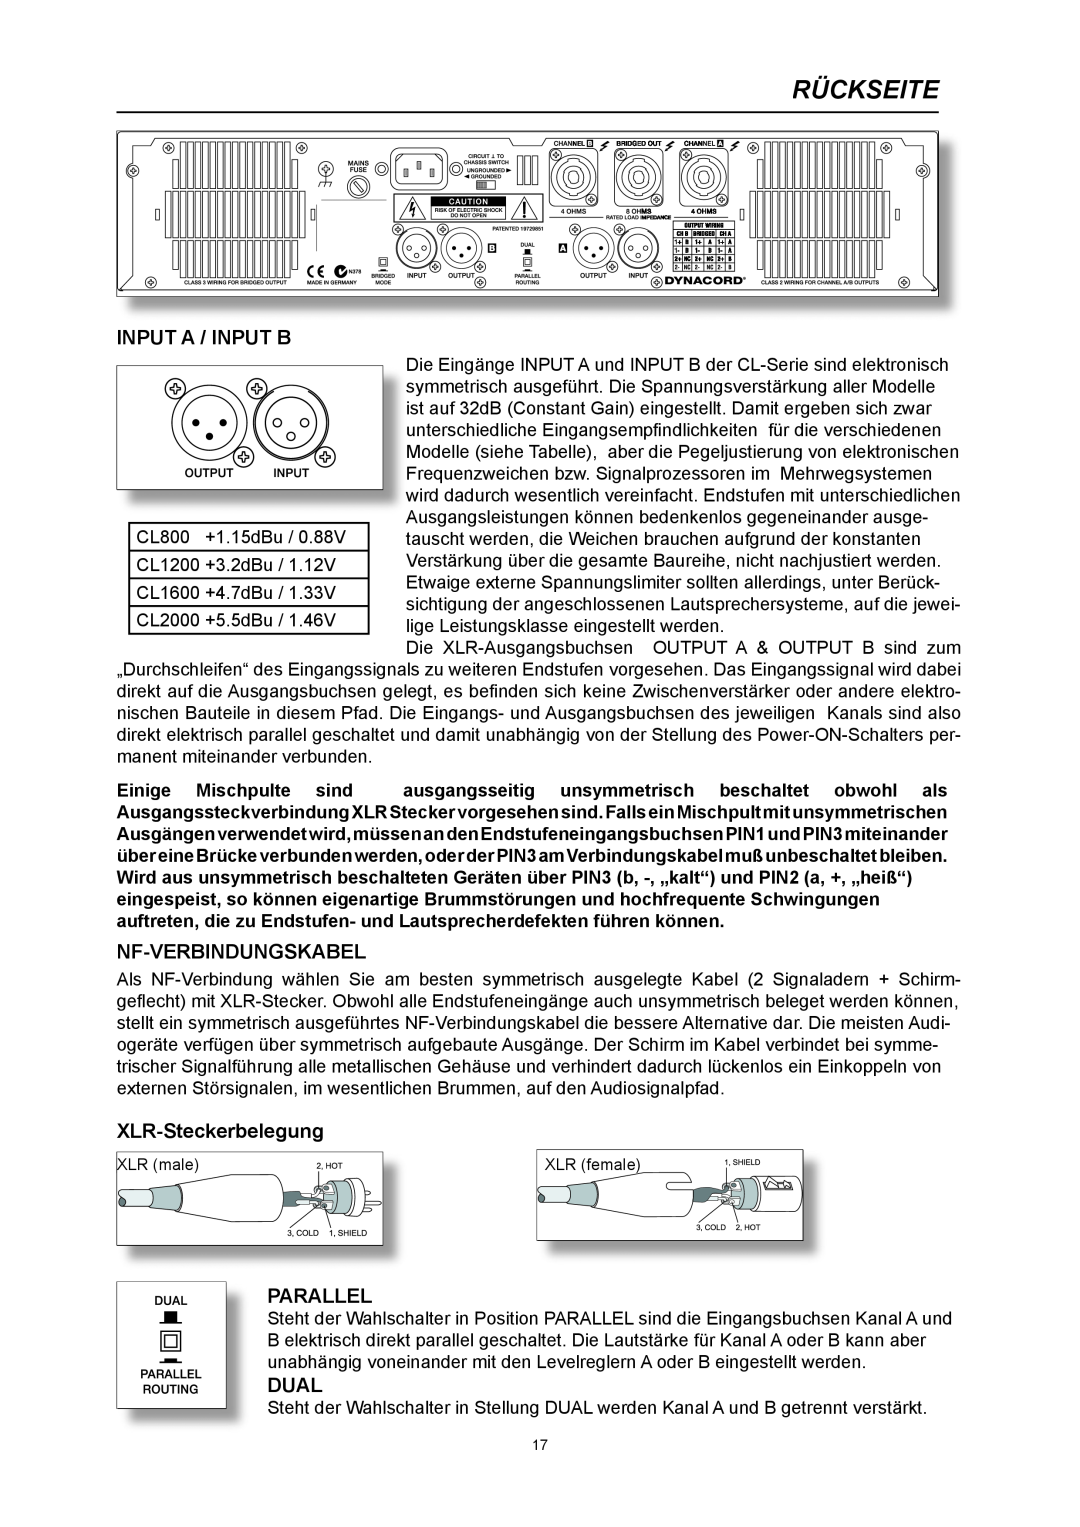 Dynacord CL 800 owner manual Rückseite, Nf-Verbindungskabel, XLR-Steckerbelegung, Input A / Input B, Parallel, Dual 